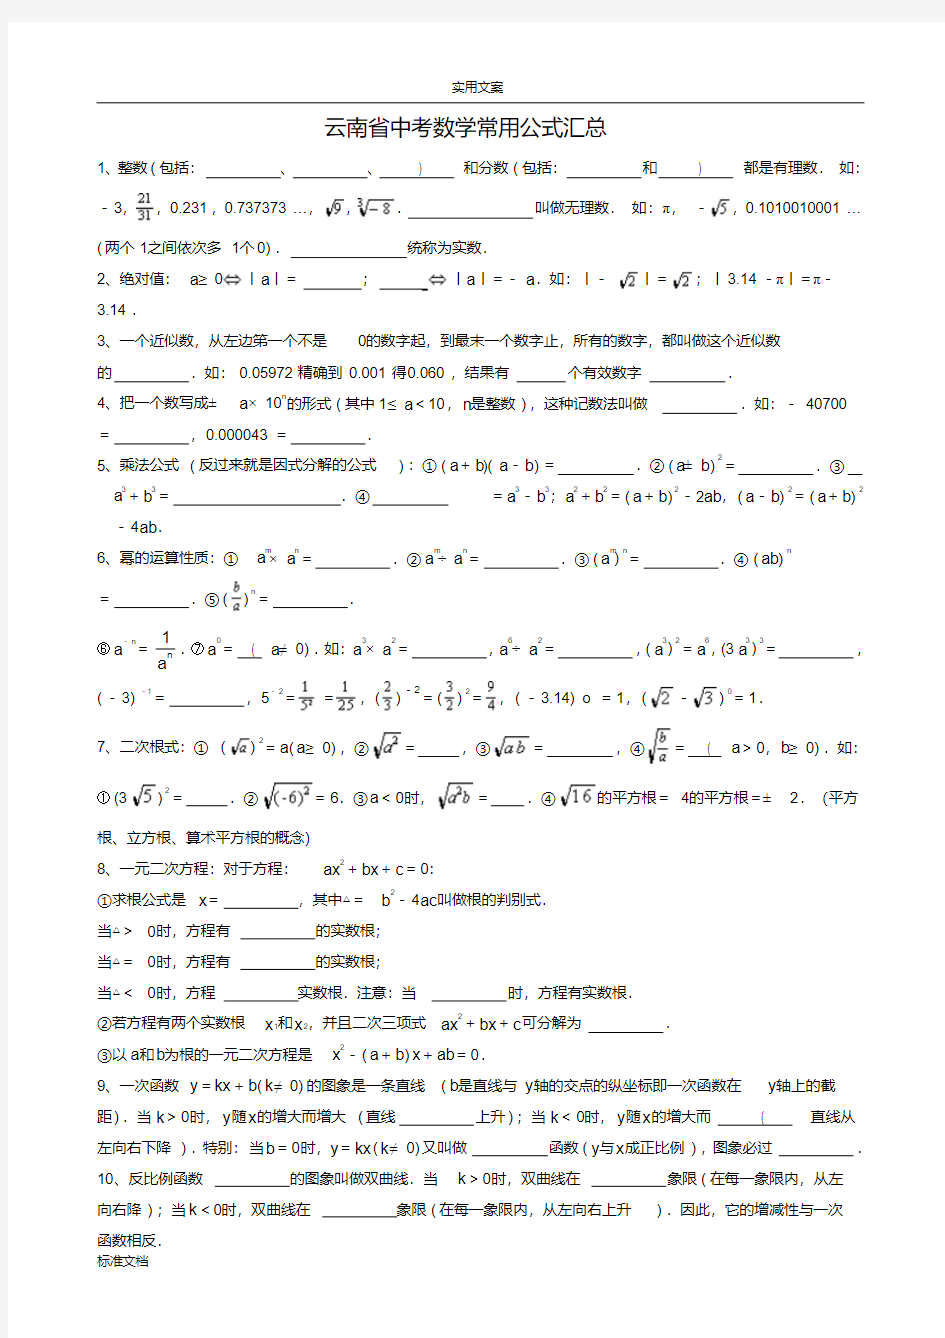 整理初中数学常用公式和定理大全(修改版)